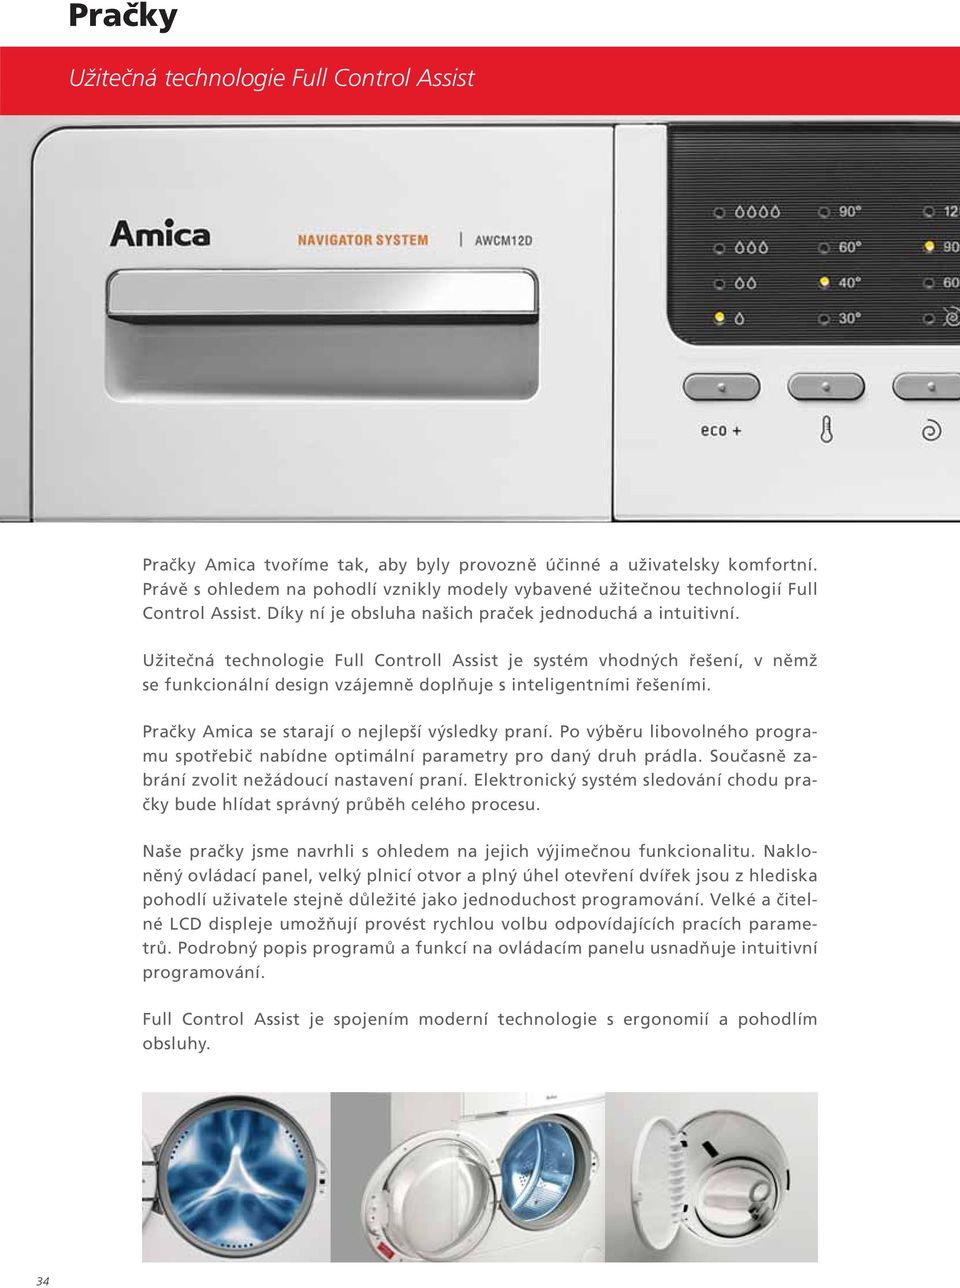 Užitečná technologie Full Controll Assist je systém vhodných řešení, v němž se funkcionální design vzájemně doplňuje s inteligentními řešeními. Pračky Amica se starají o nejlepší výsledky praní.